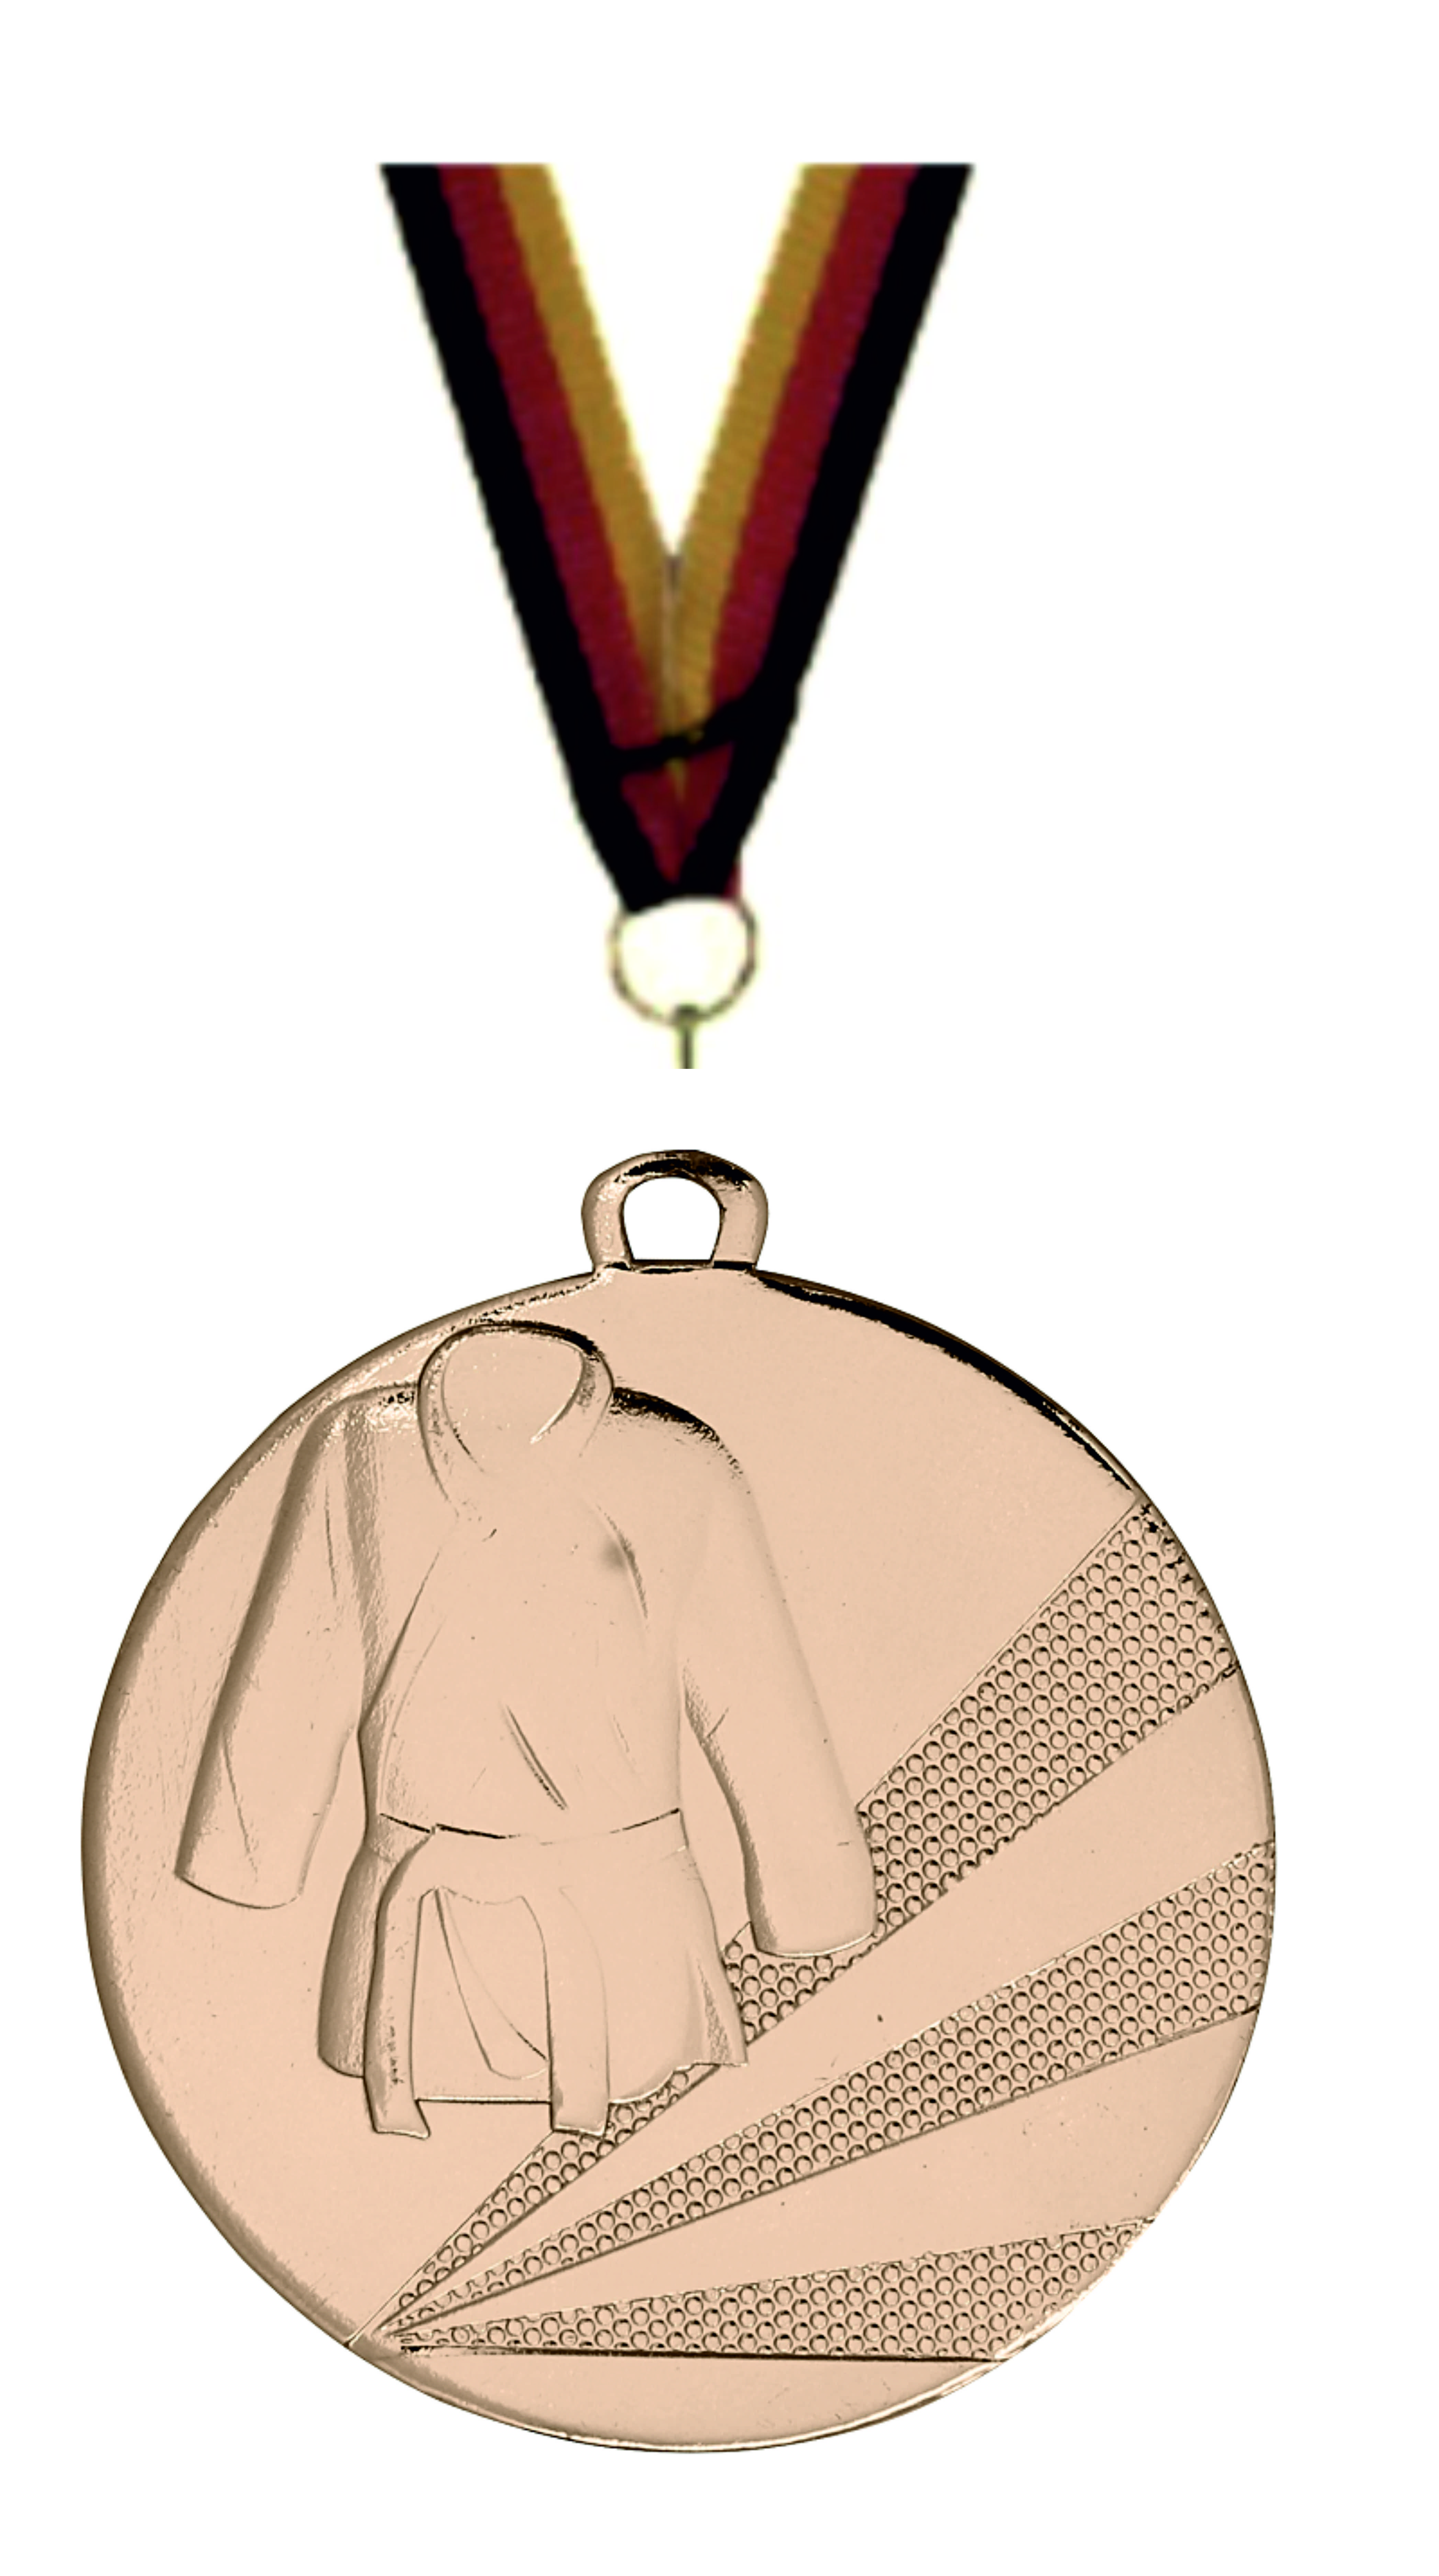 Judo-Kampfsport-Medaille D112D inkl. Band u. Beschriftung Bronze Fertig montiert gegen Aufpreis